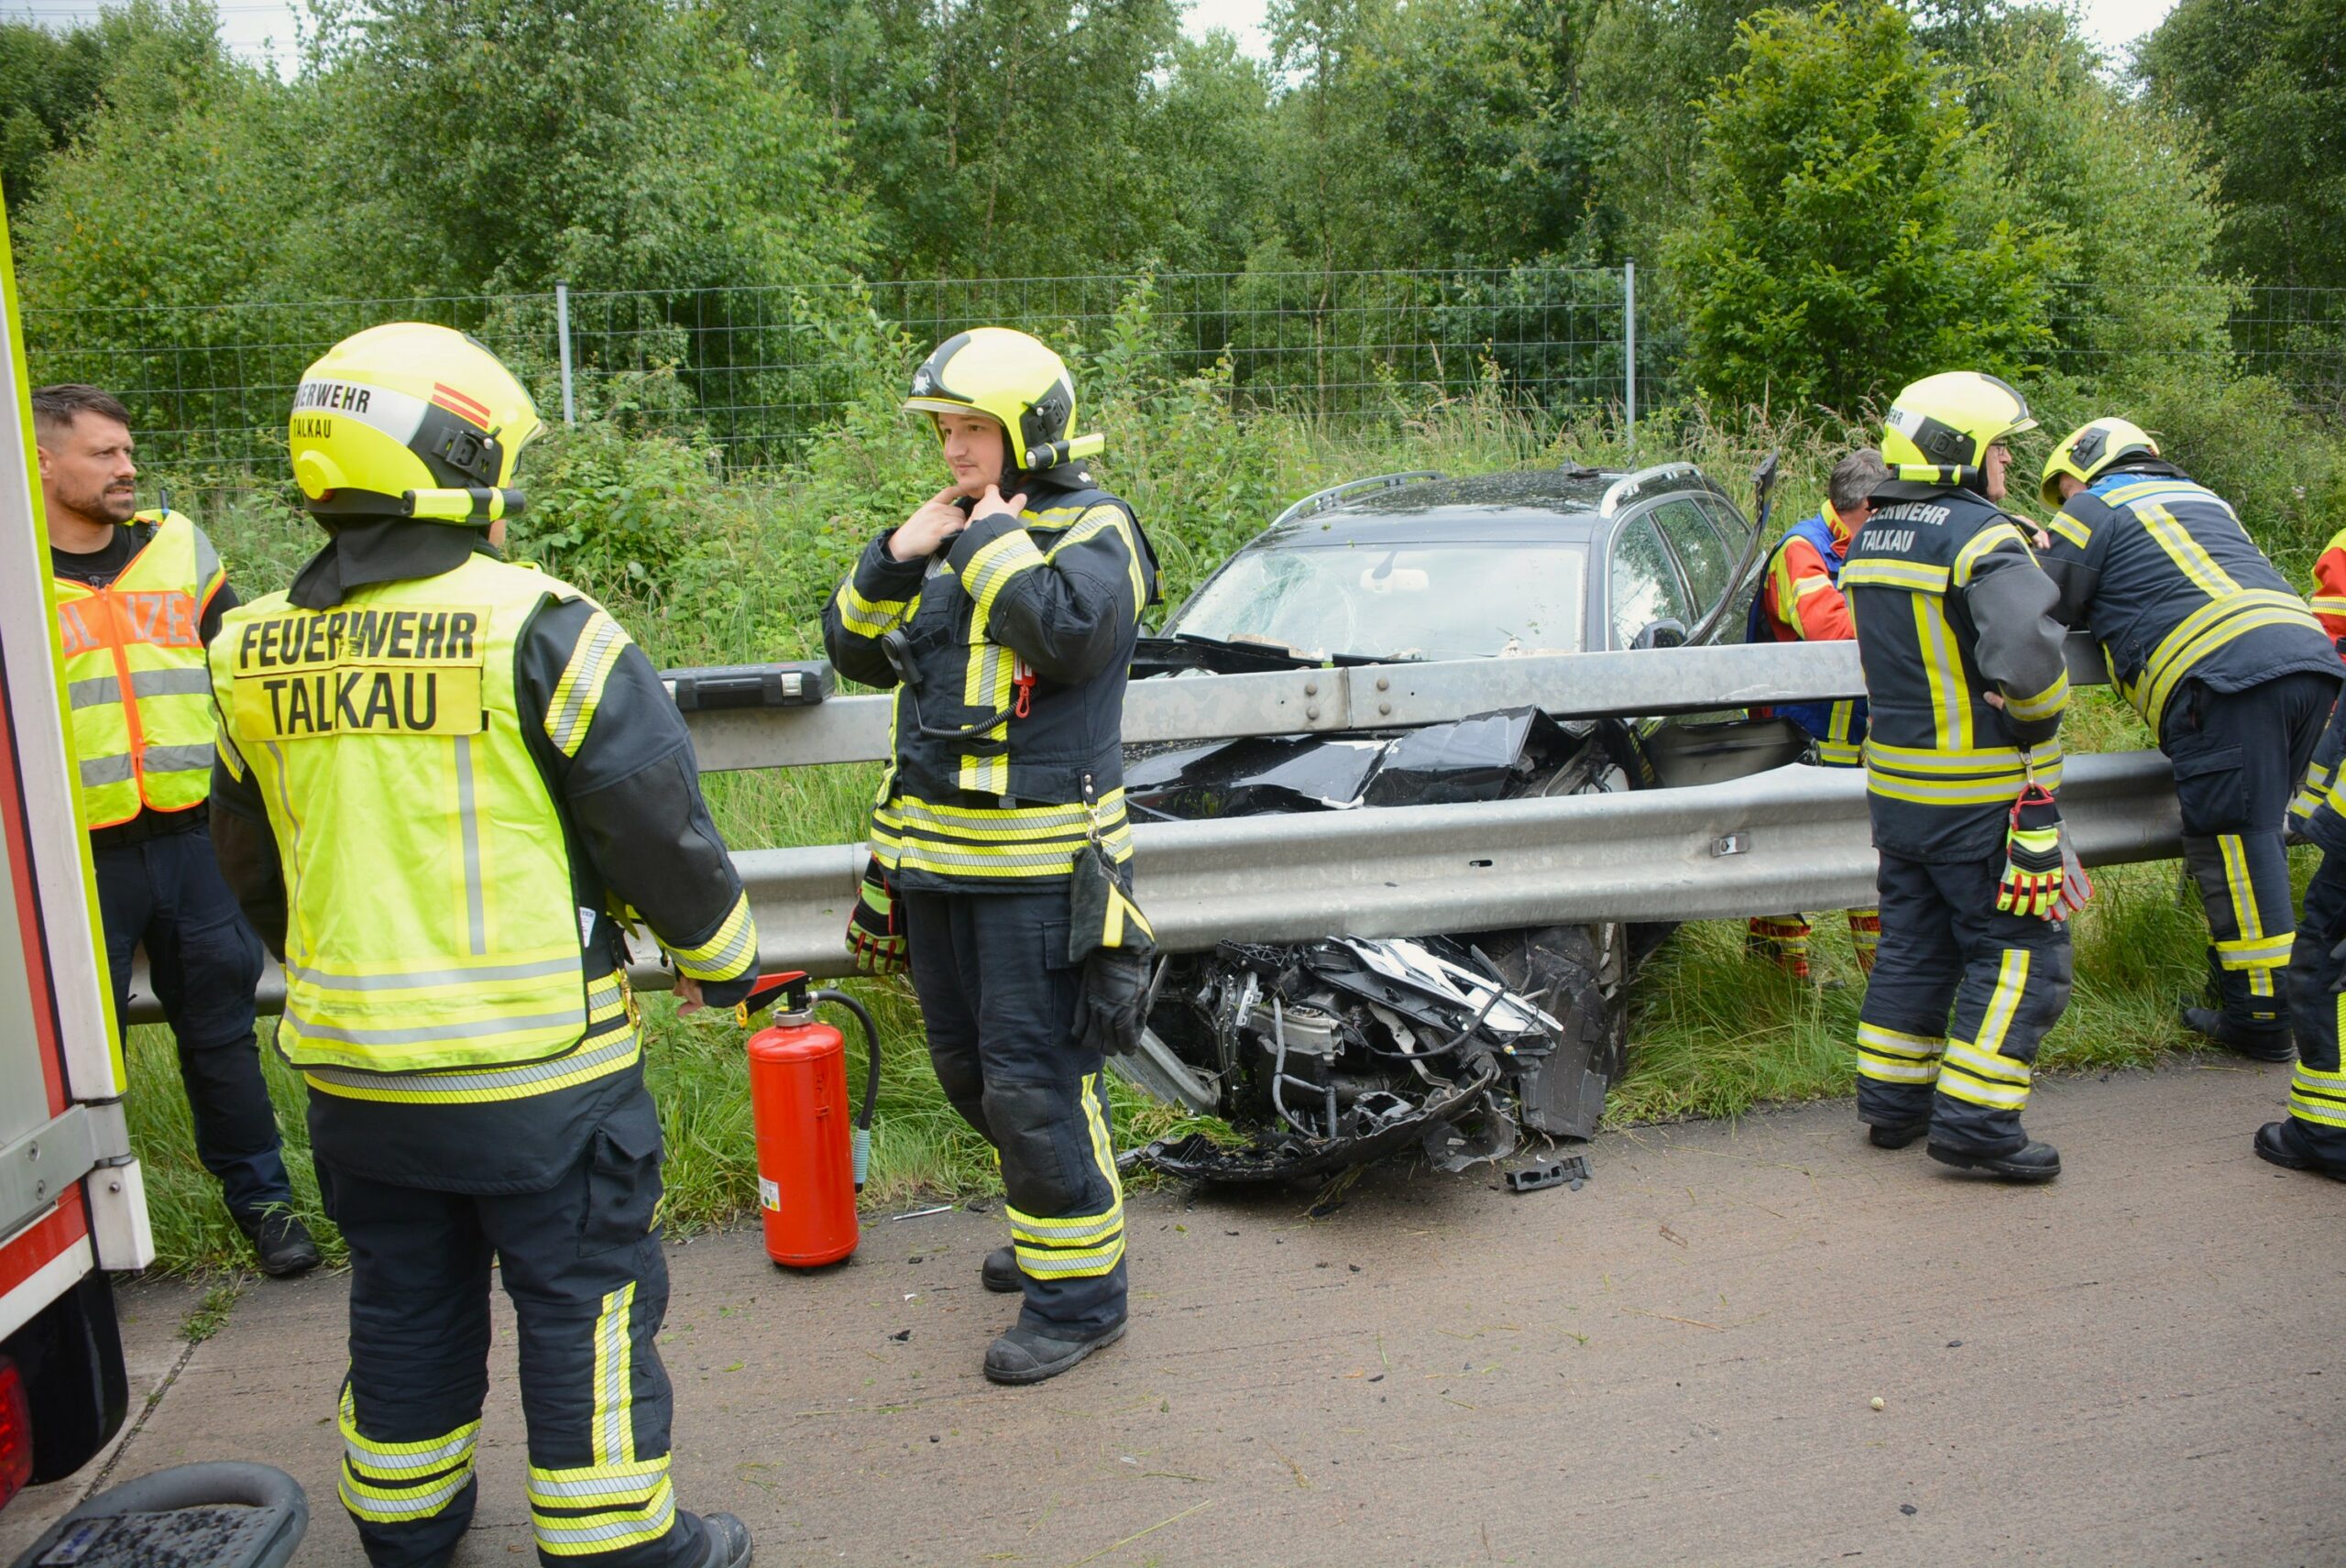 Unfall auf Autobahn bei Gudow – Audi verkeilt sich unter leitplanke, ein Verletzter